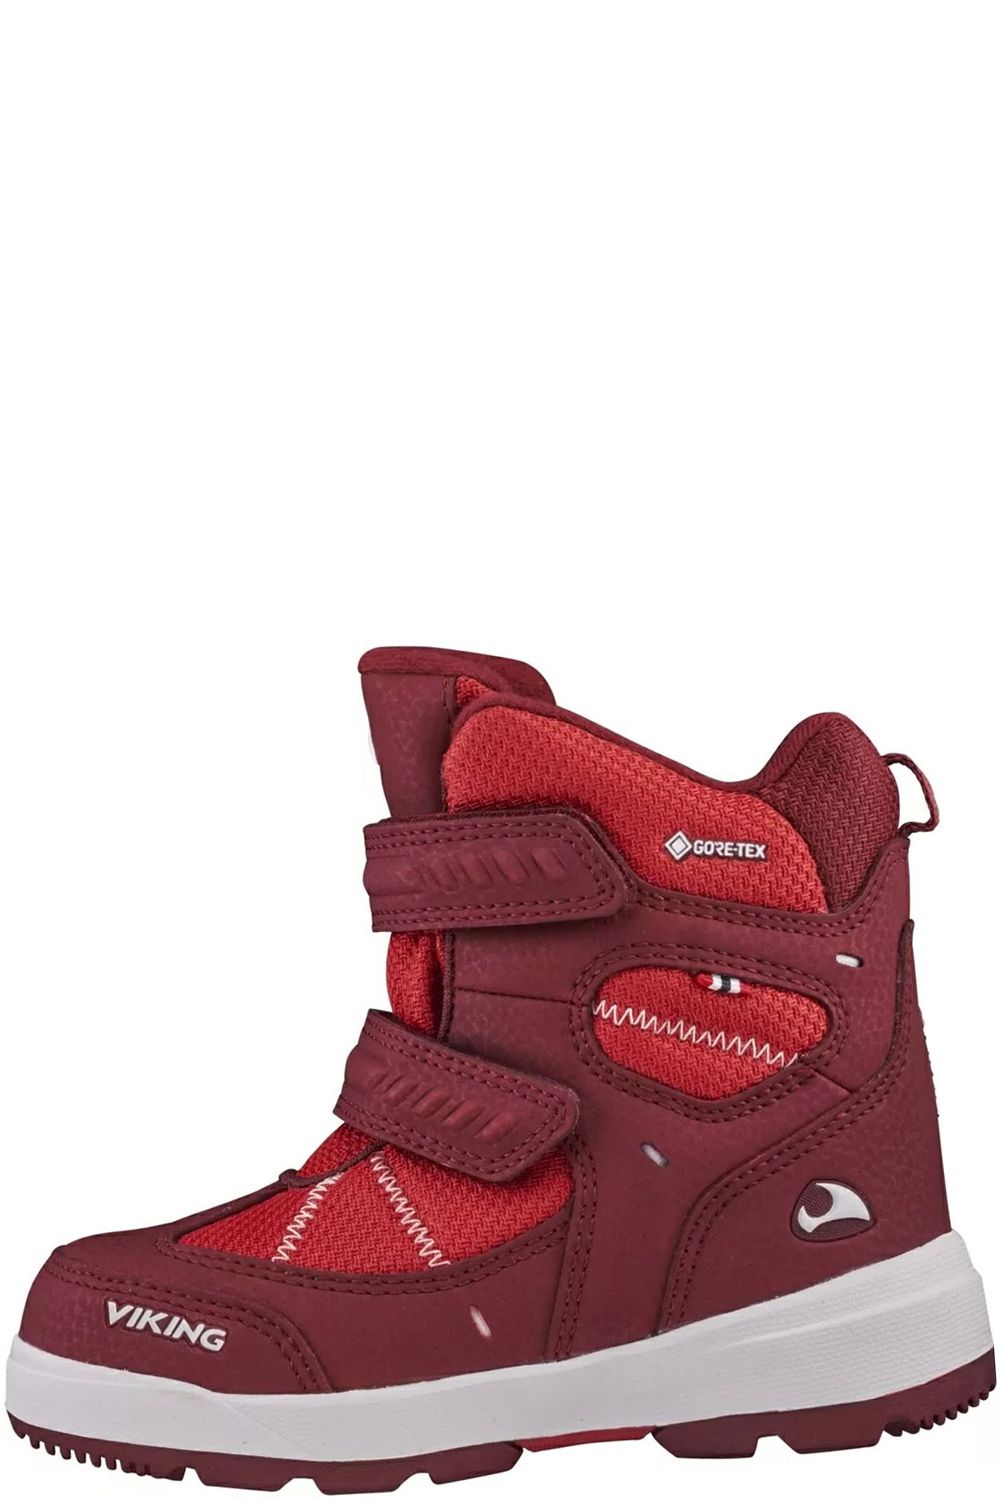 Ботинки Viking, размер 25, цвет красный 3-87060-5210 - фото 1